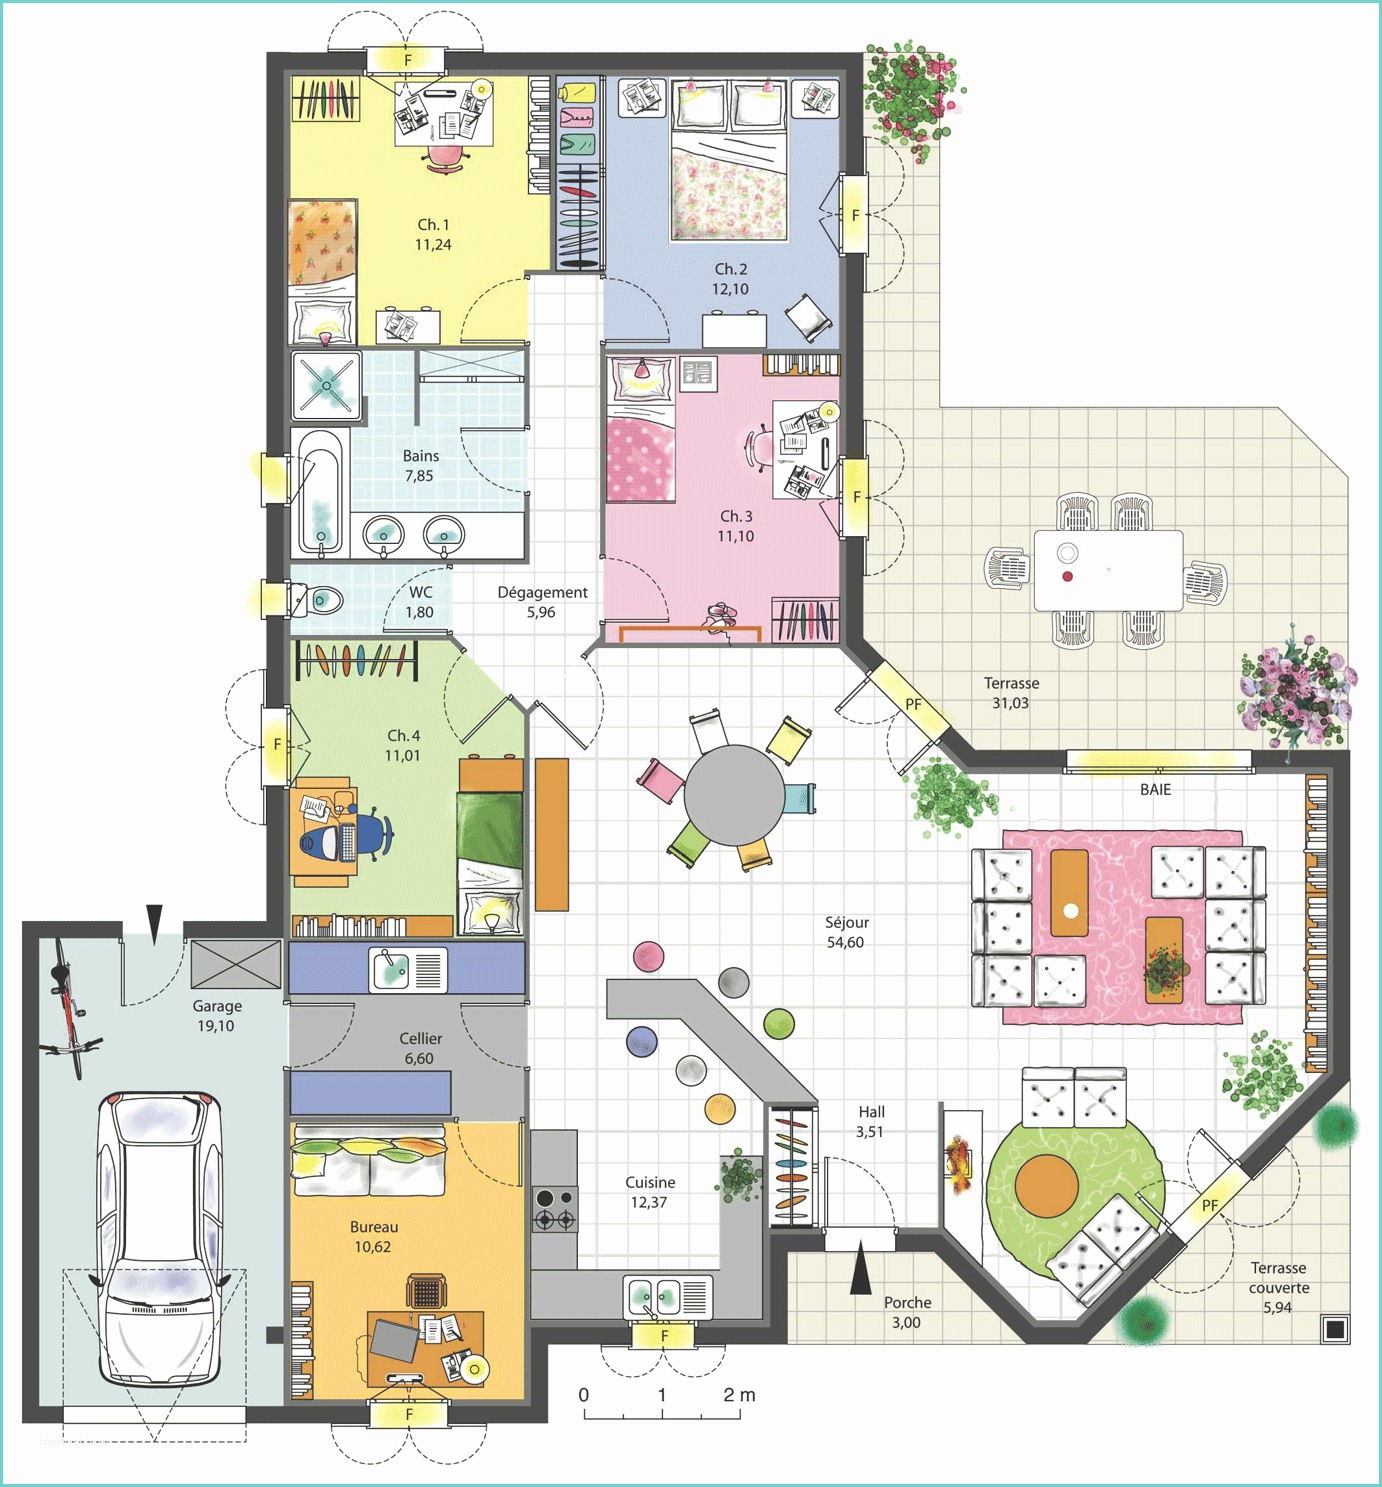 Plan De Maison 3d 150m2 Maison Familiale 4 Chambres Avec Bureau Terrasse Garage